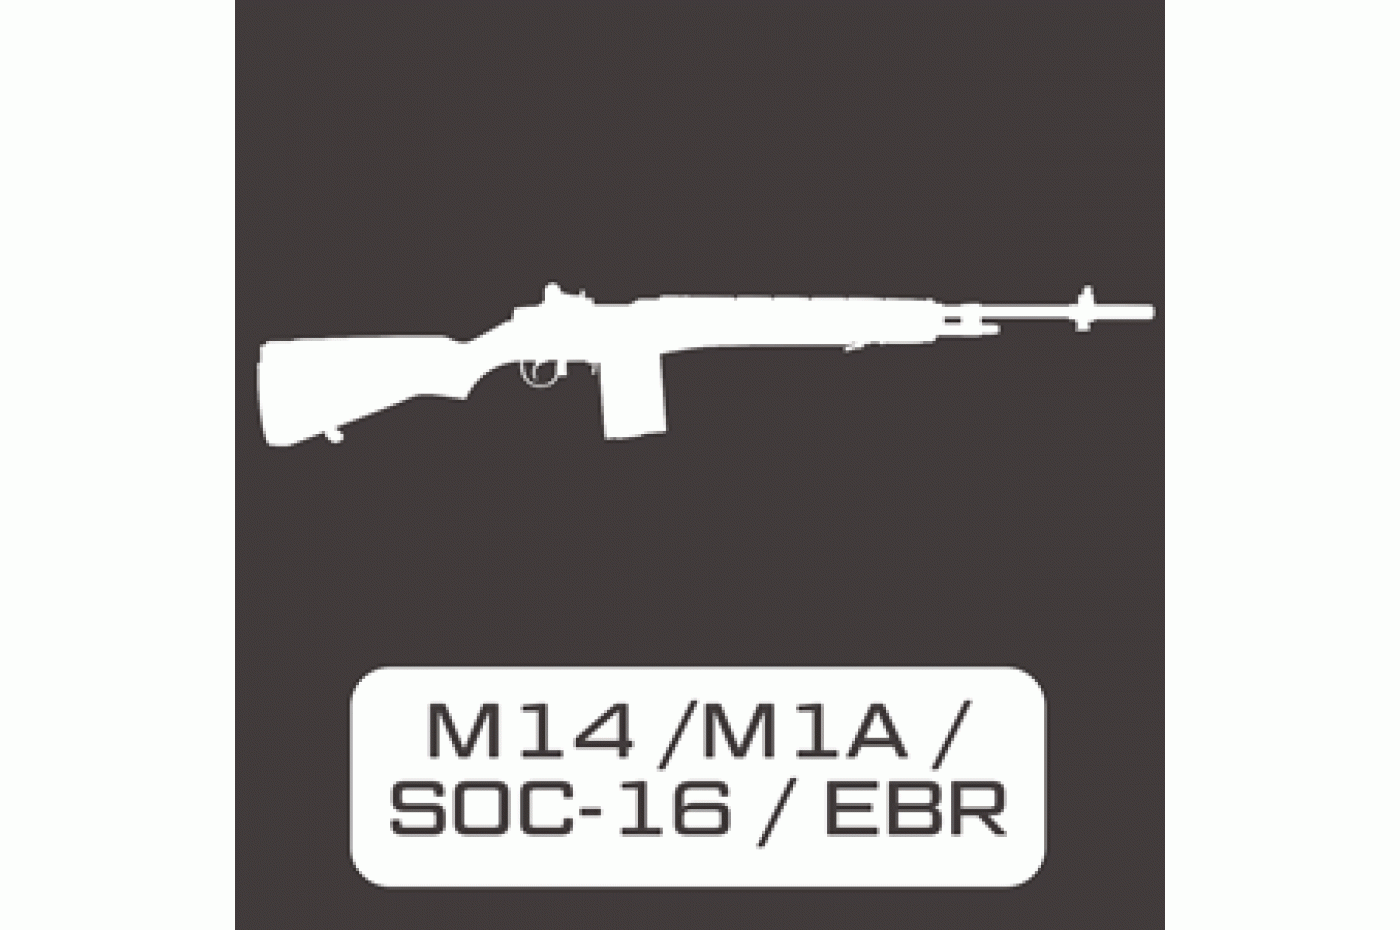 M14 / M1A / SOC-16 / EBR